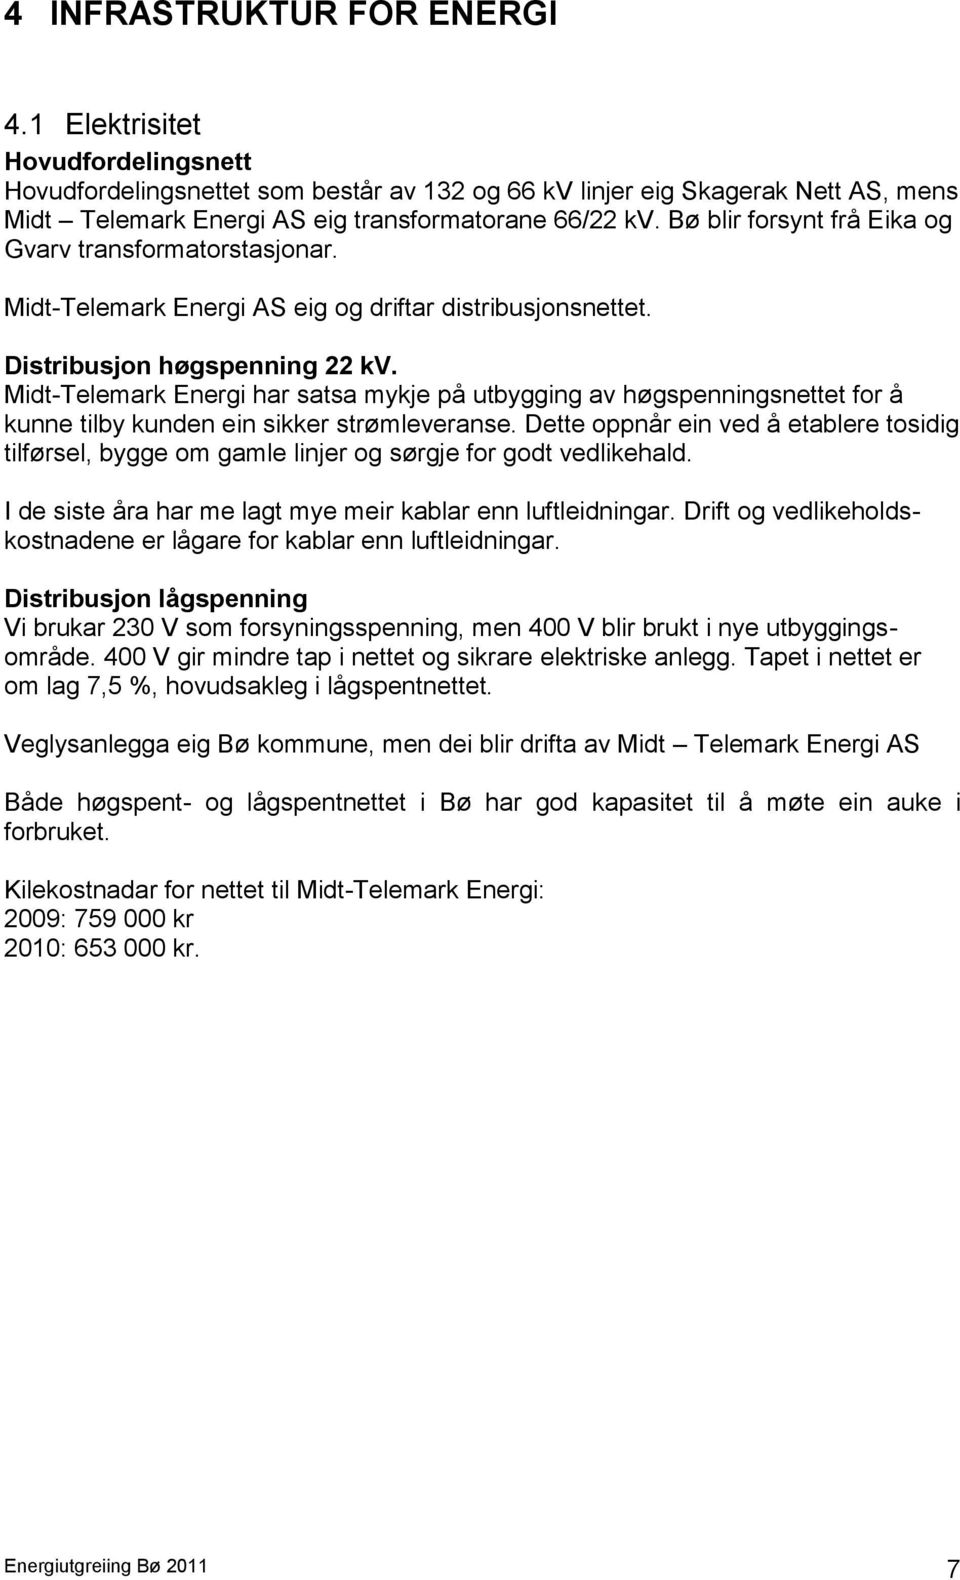 Bø blir forsynt frå Eika og Gvarv transformatorstasjonar. Midt-Telemark Energi AS eig og driftar distribusjonsnettet. Distribusjon høgspenning 22 kv.